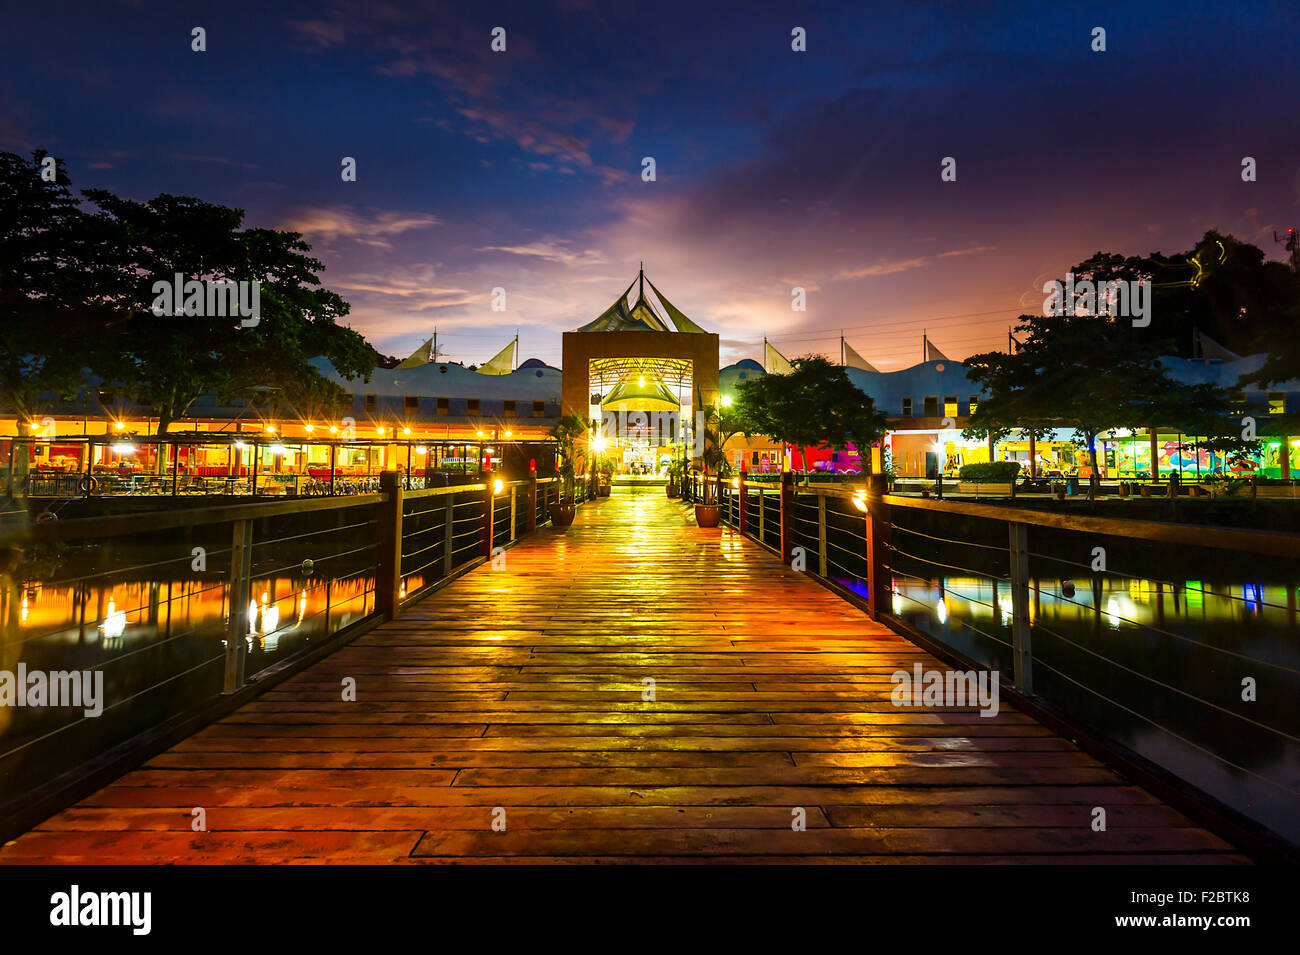 Bukit Merah Laketown Resort during Sunset Stock Photo